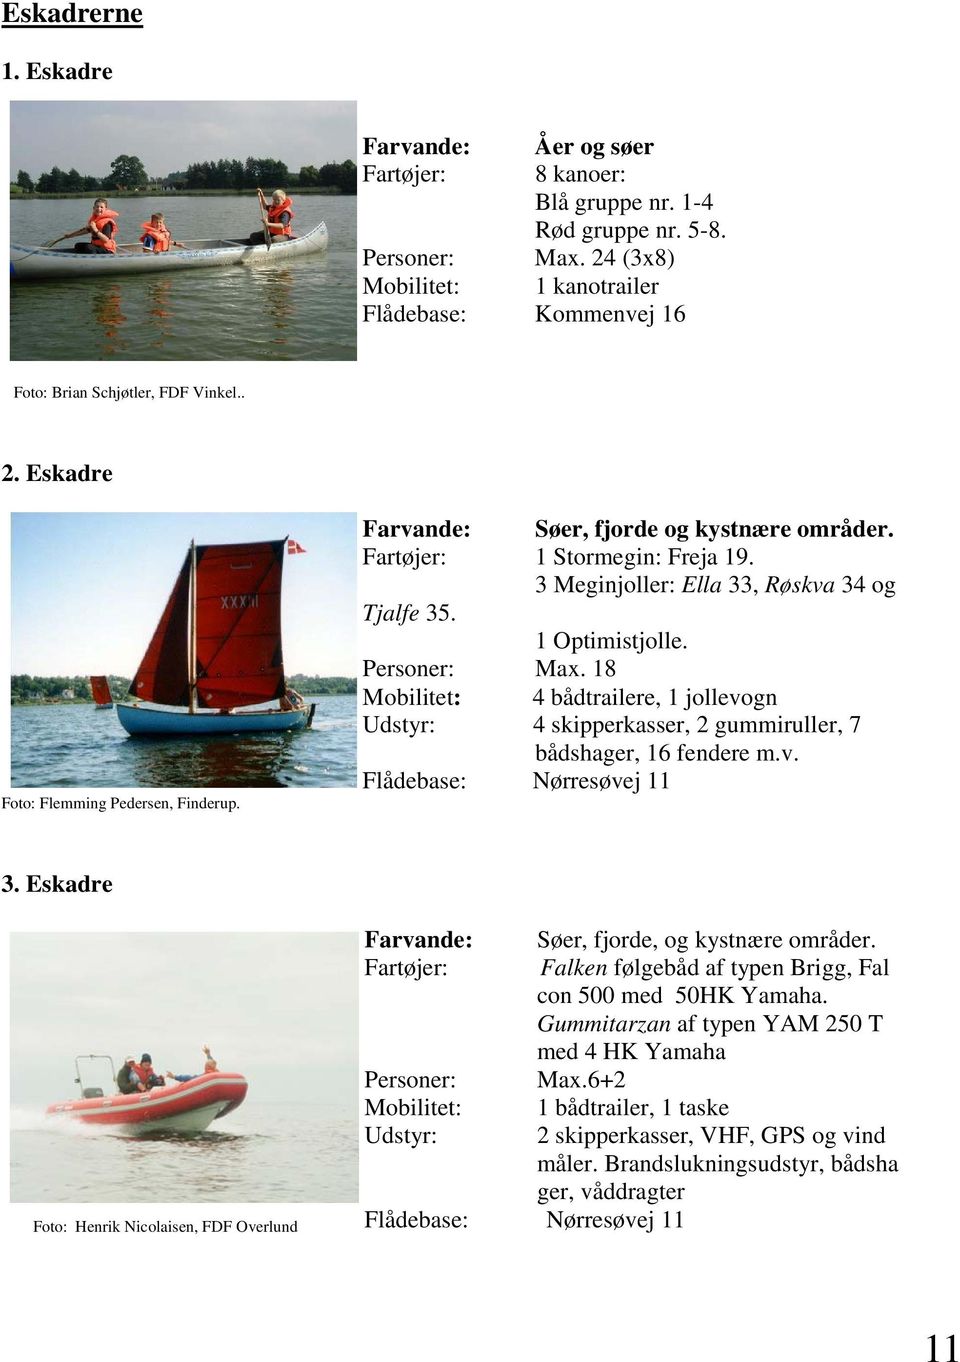 Fartøjer: 1 Stormegin: Freja 19. 3 Meginjoller: Ella 33, Røskva 34 og Tjalfe 35. 1 Optimistjolle. Personer: Max.